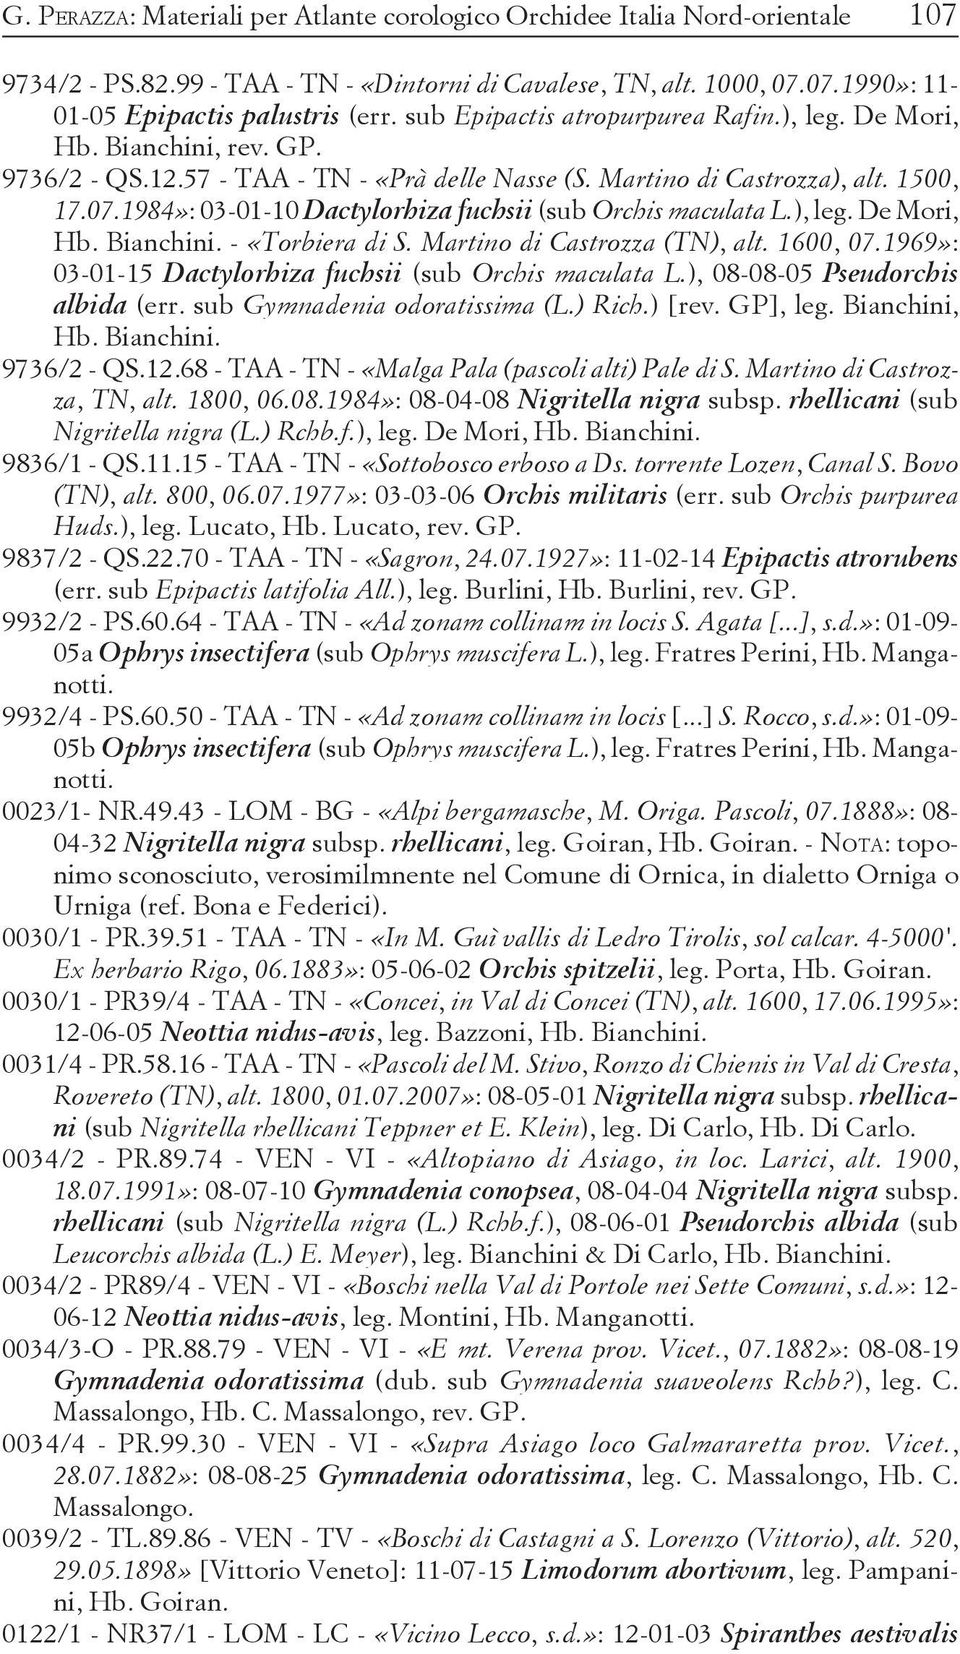 1984»: 03-01-10 Dactylorhiza fuchsii (sub Orchis maculata L.), leg. De Mori, Hb. Bianchini. - «Torbiera di S. Martino di Castrozza (TN), alt. 1600, 07.